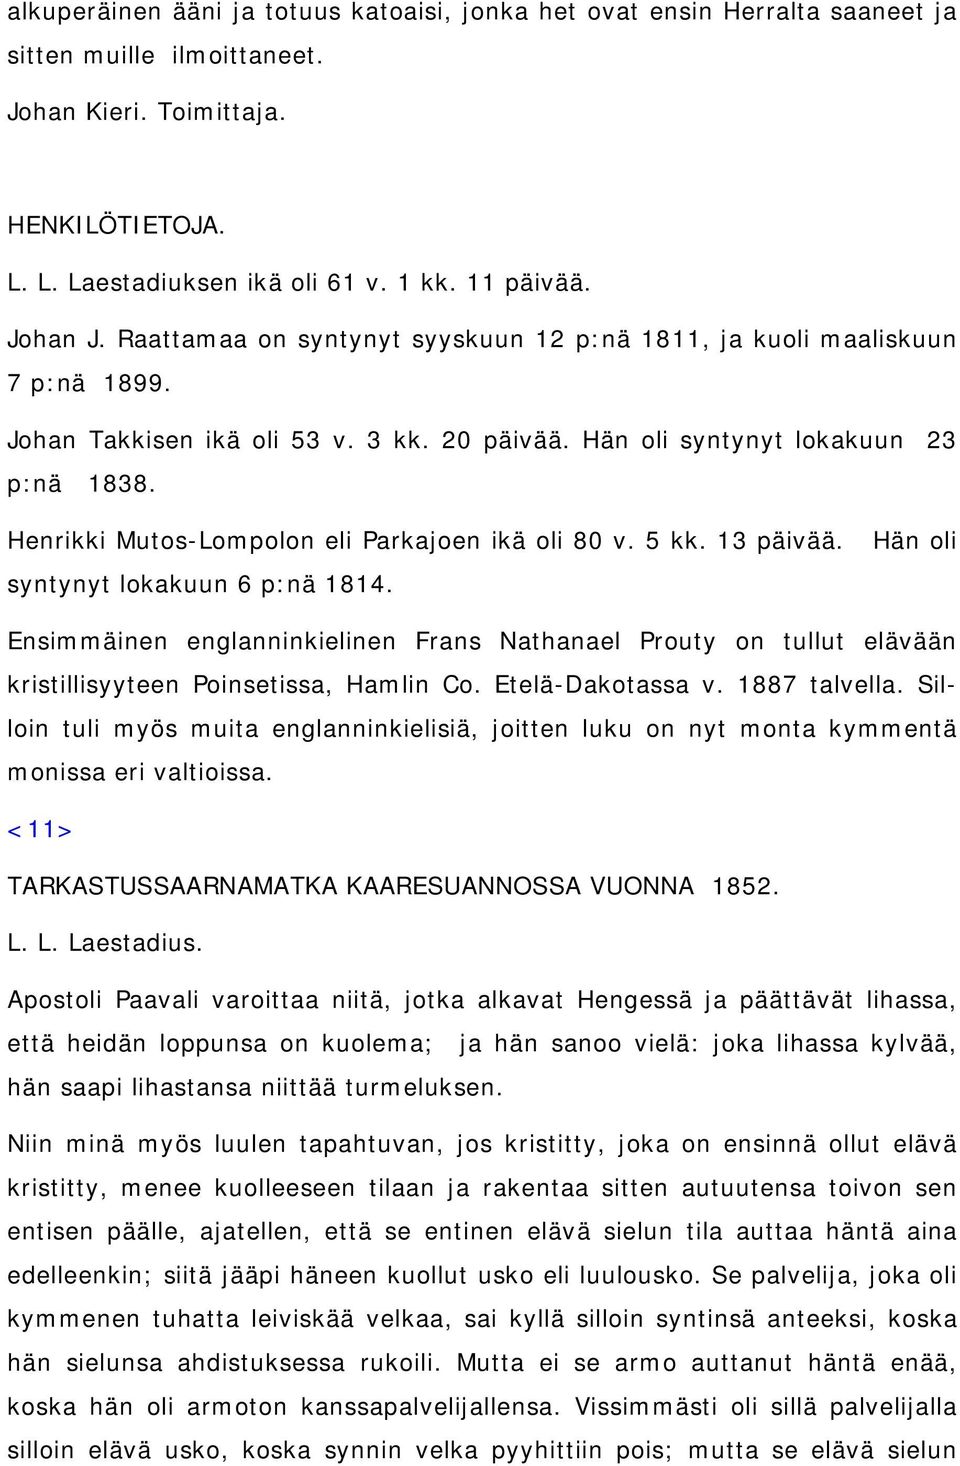 Henrikki Mutos-Lompolon eli Parkajoen ikä oli 80 v. 5 kk. 13 päivää. syntynyt lokakuun 6 p:nä 1814.